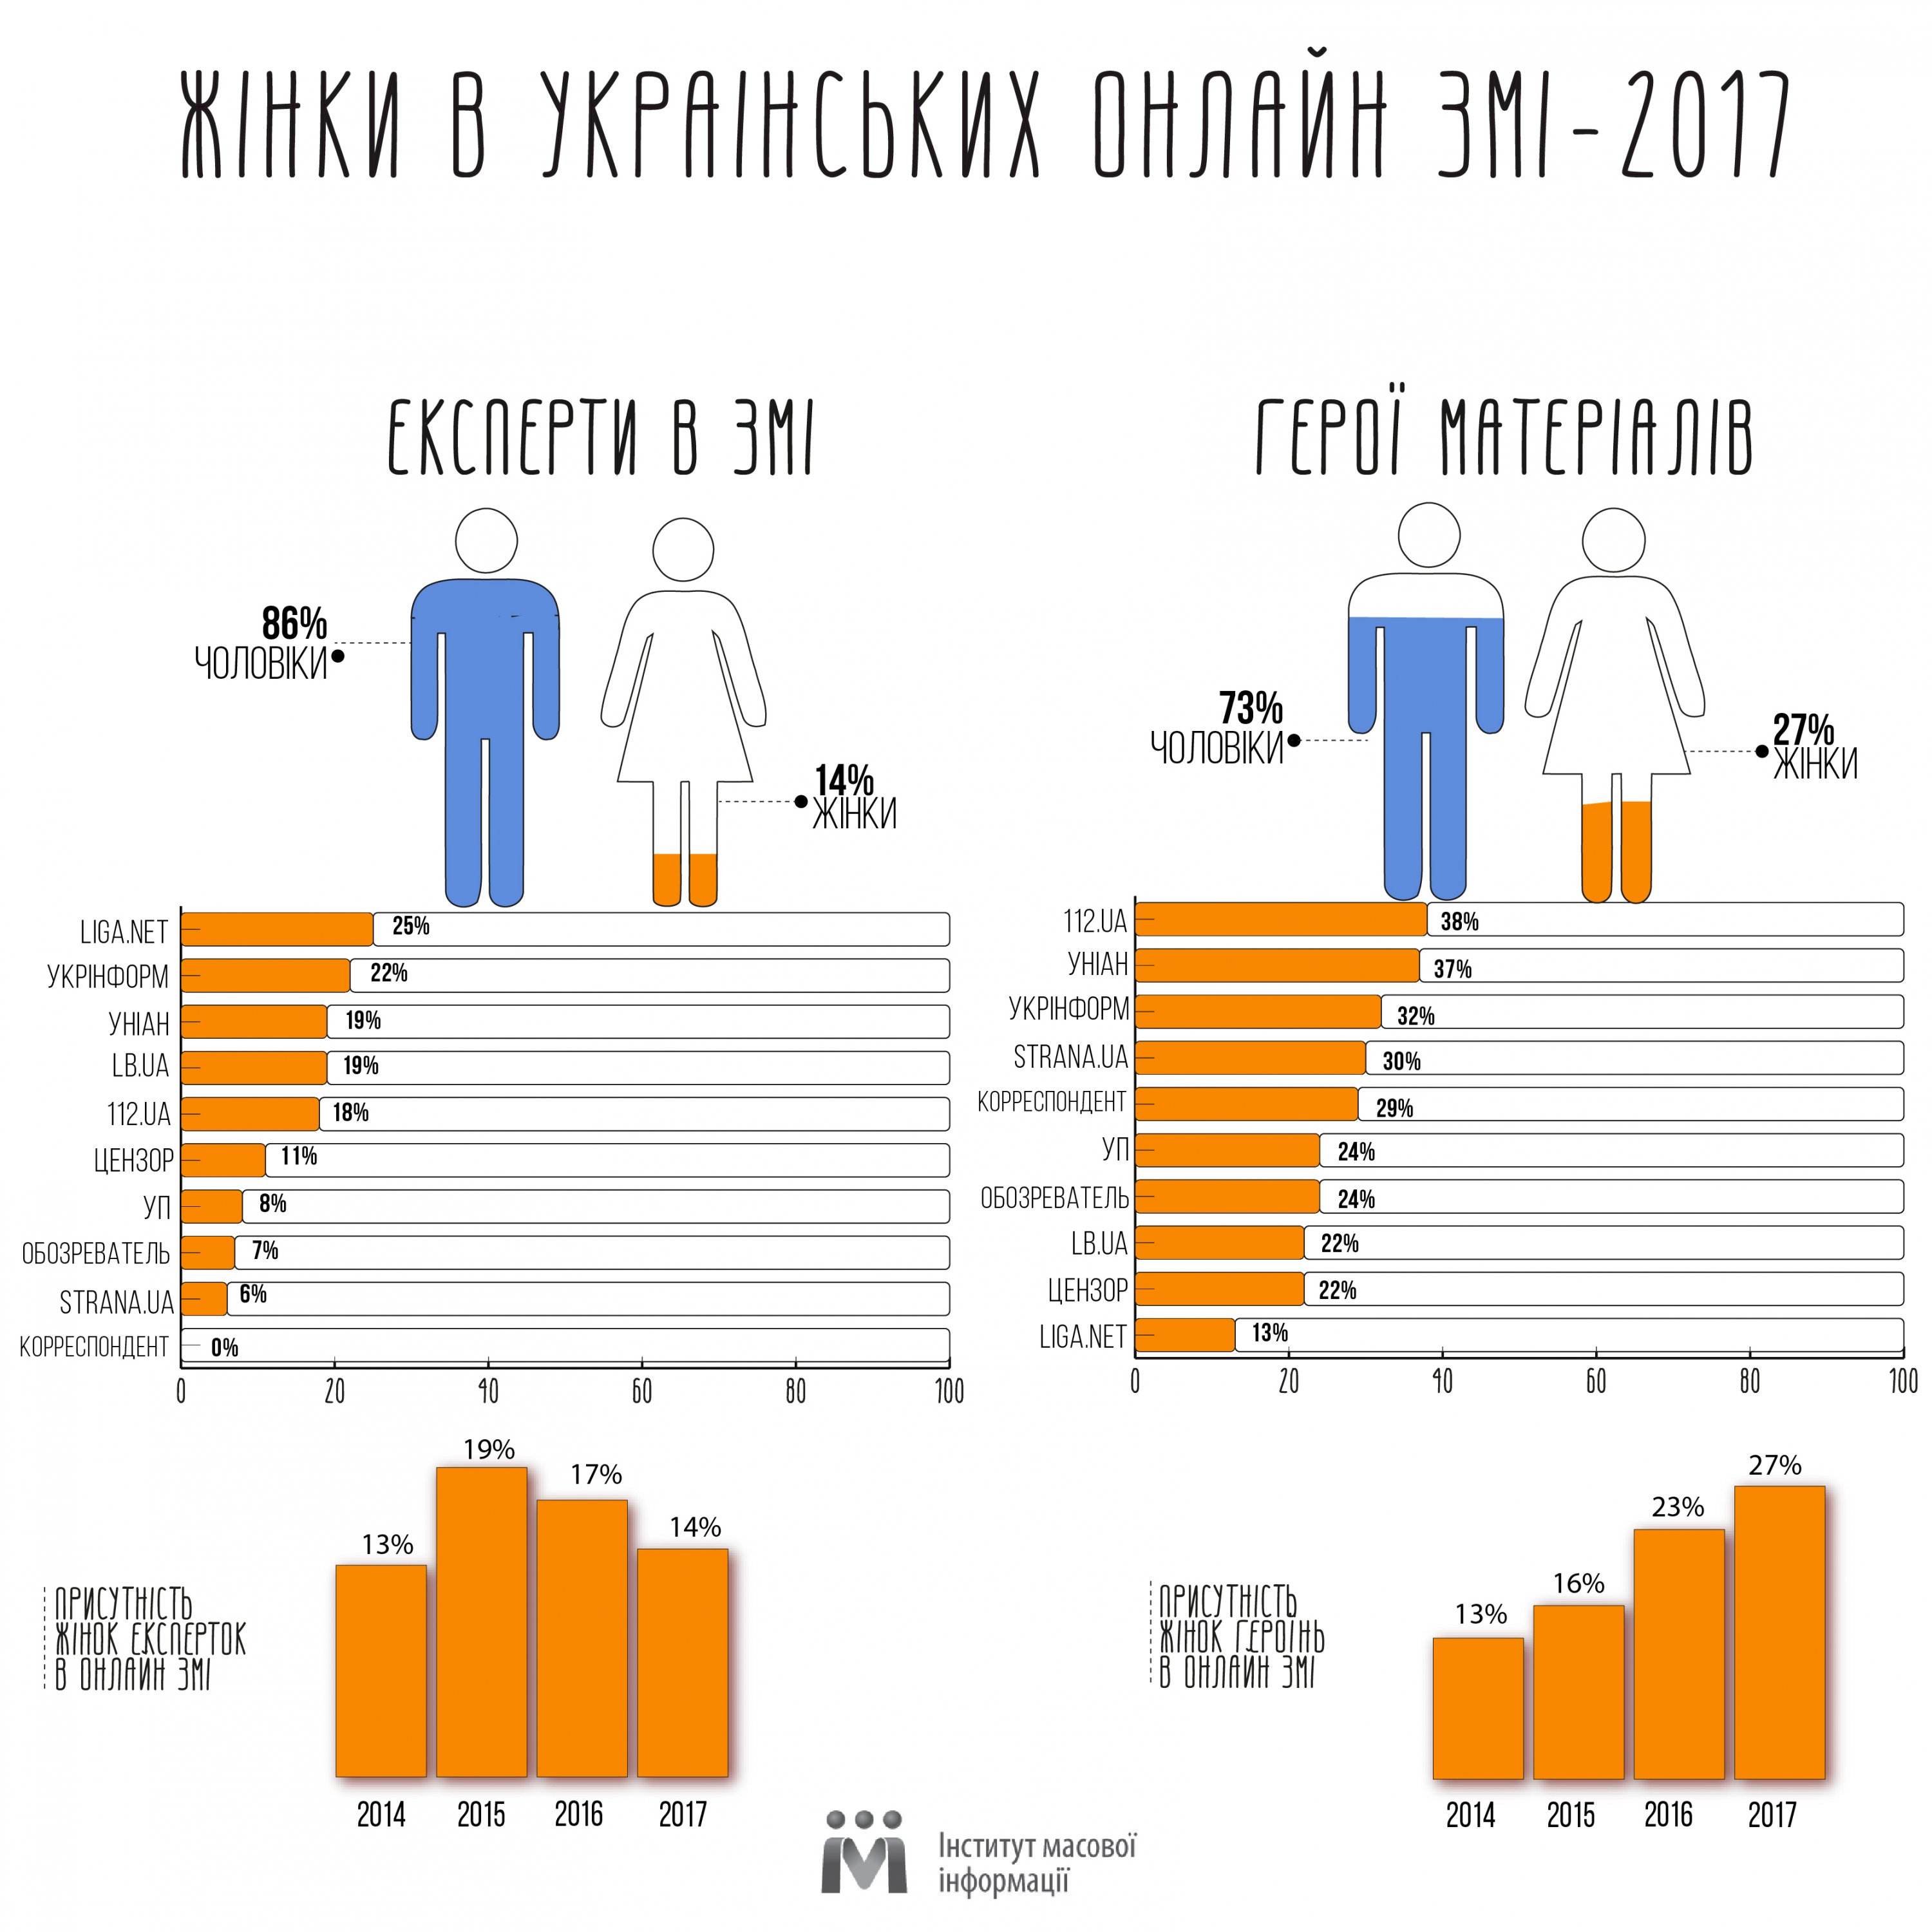 В украинских СМИ стало крохотнее женщин-экспертов - исследование